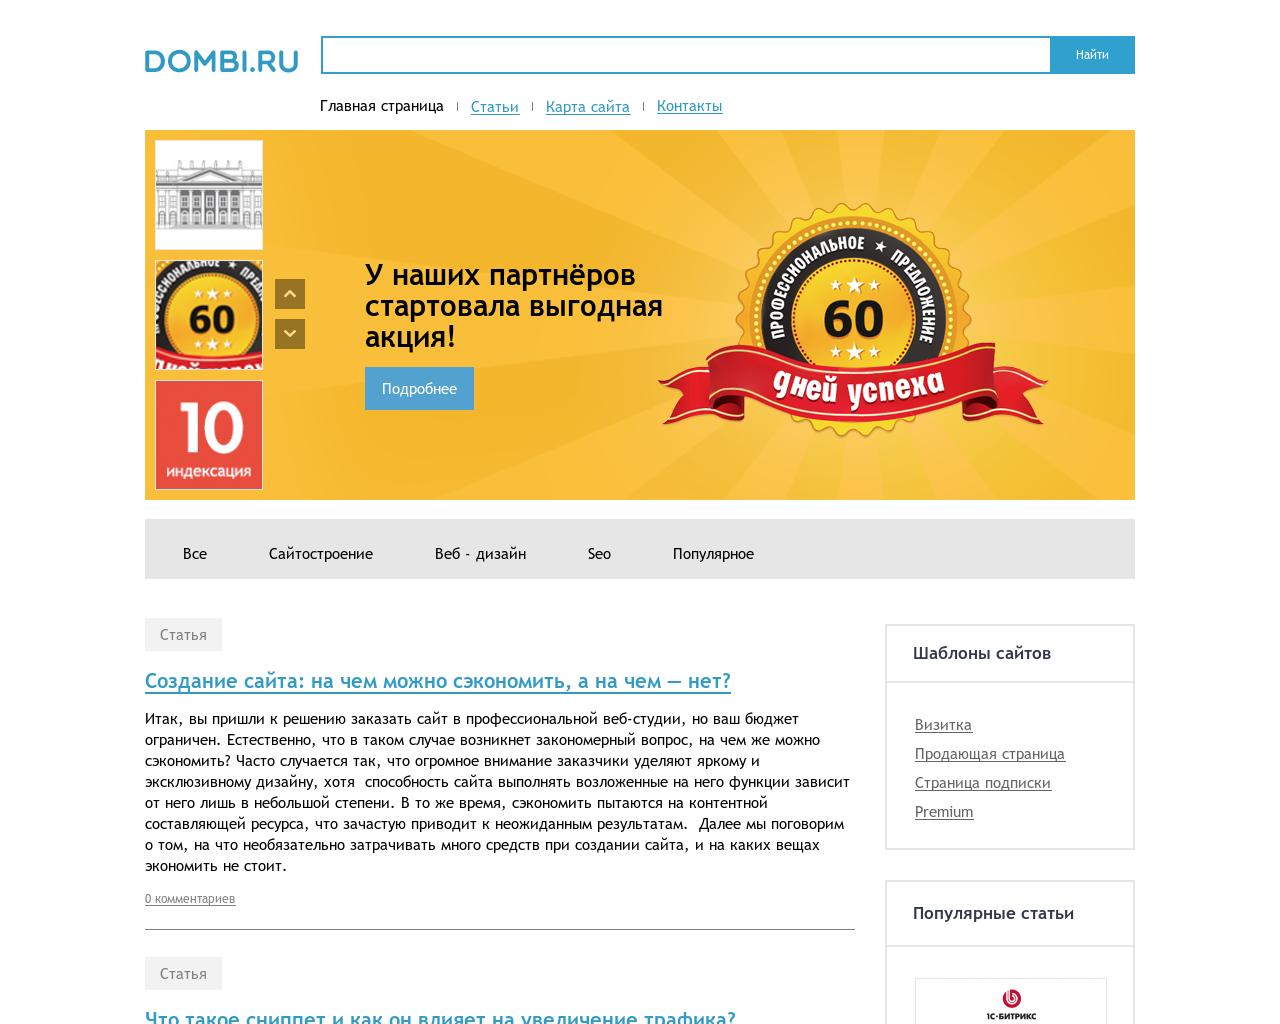 Изображение сайта dombi.ru в разрешении 1280x1024